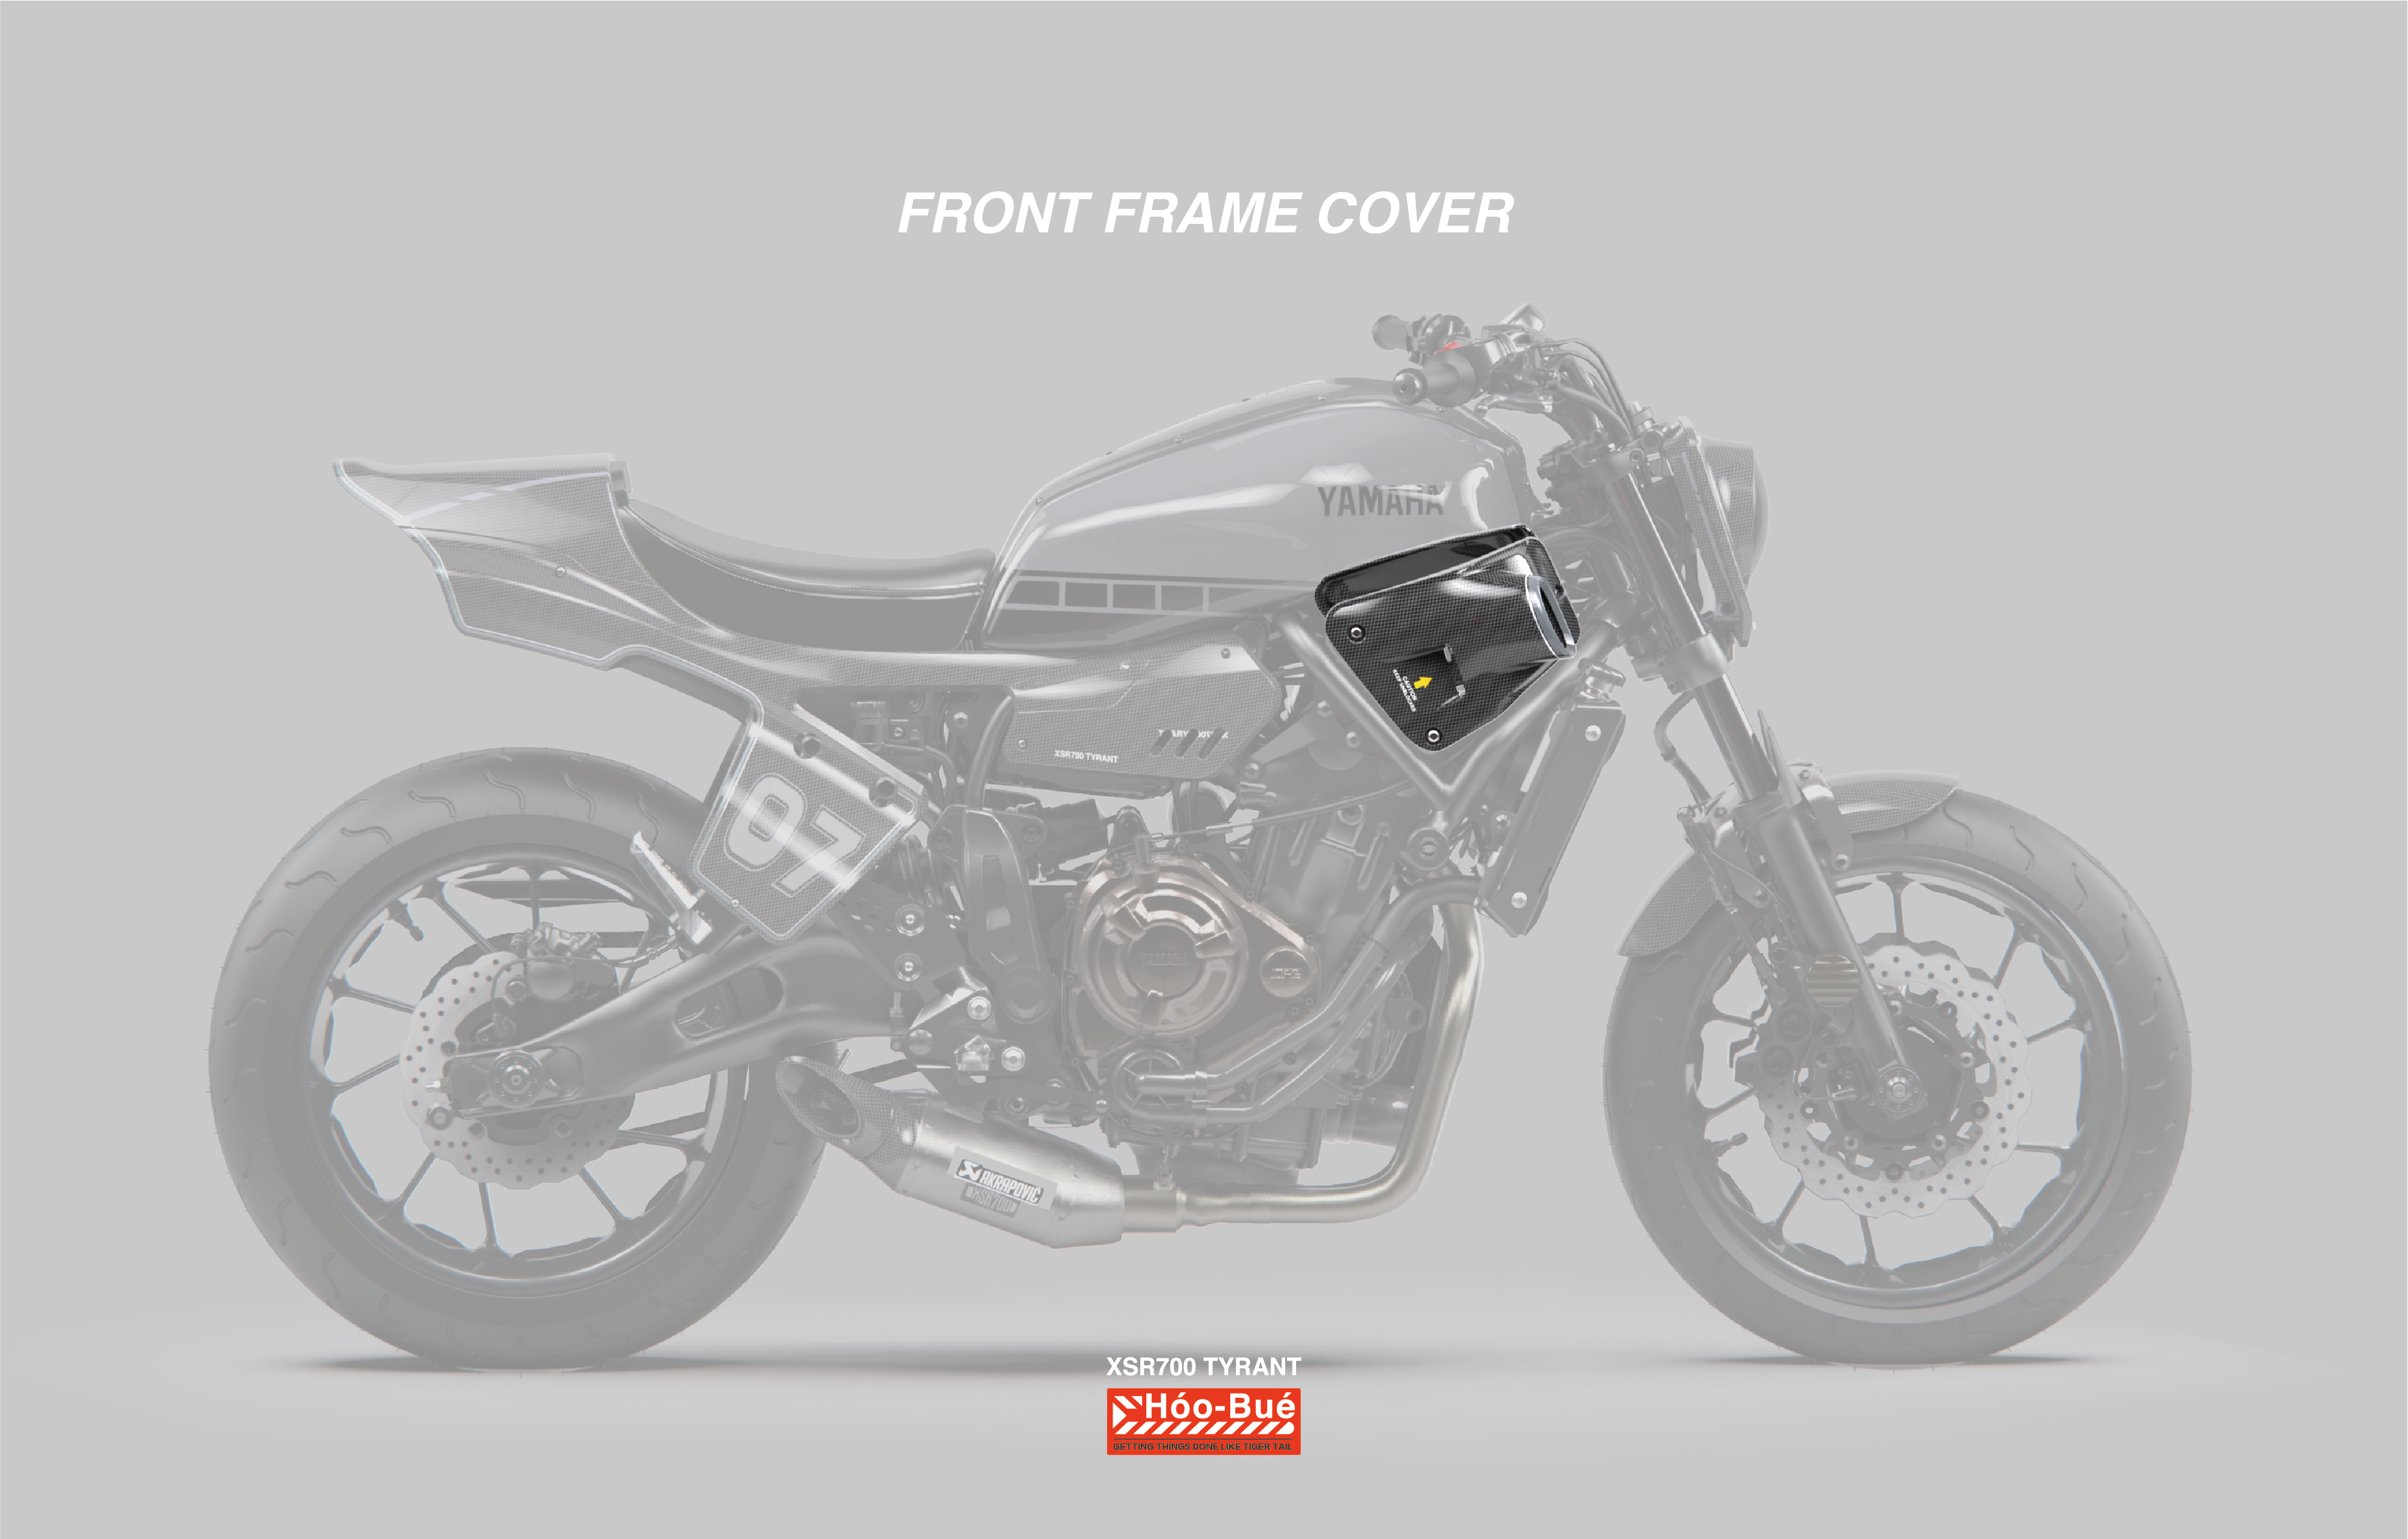 XSR700 Carbon Fiber Front Frame Cover